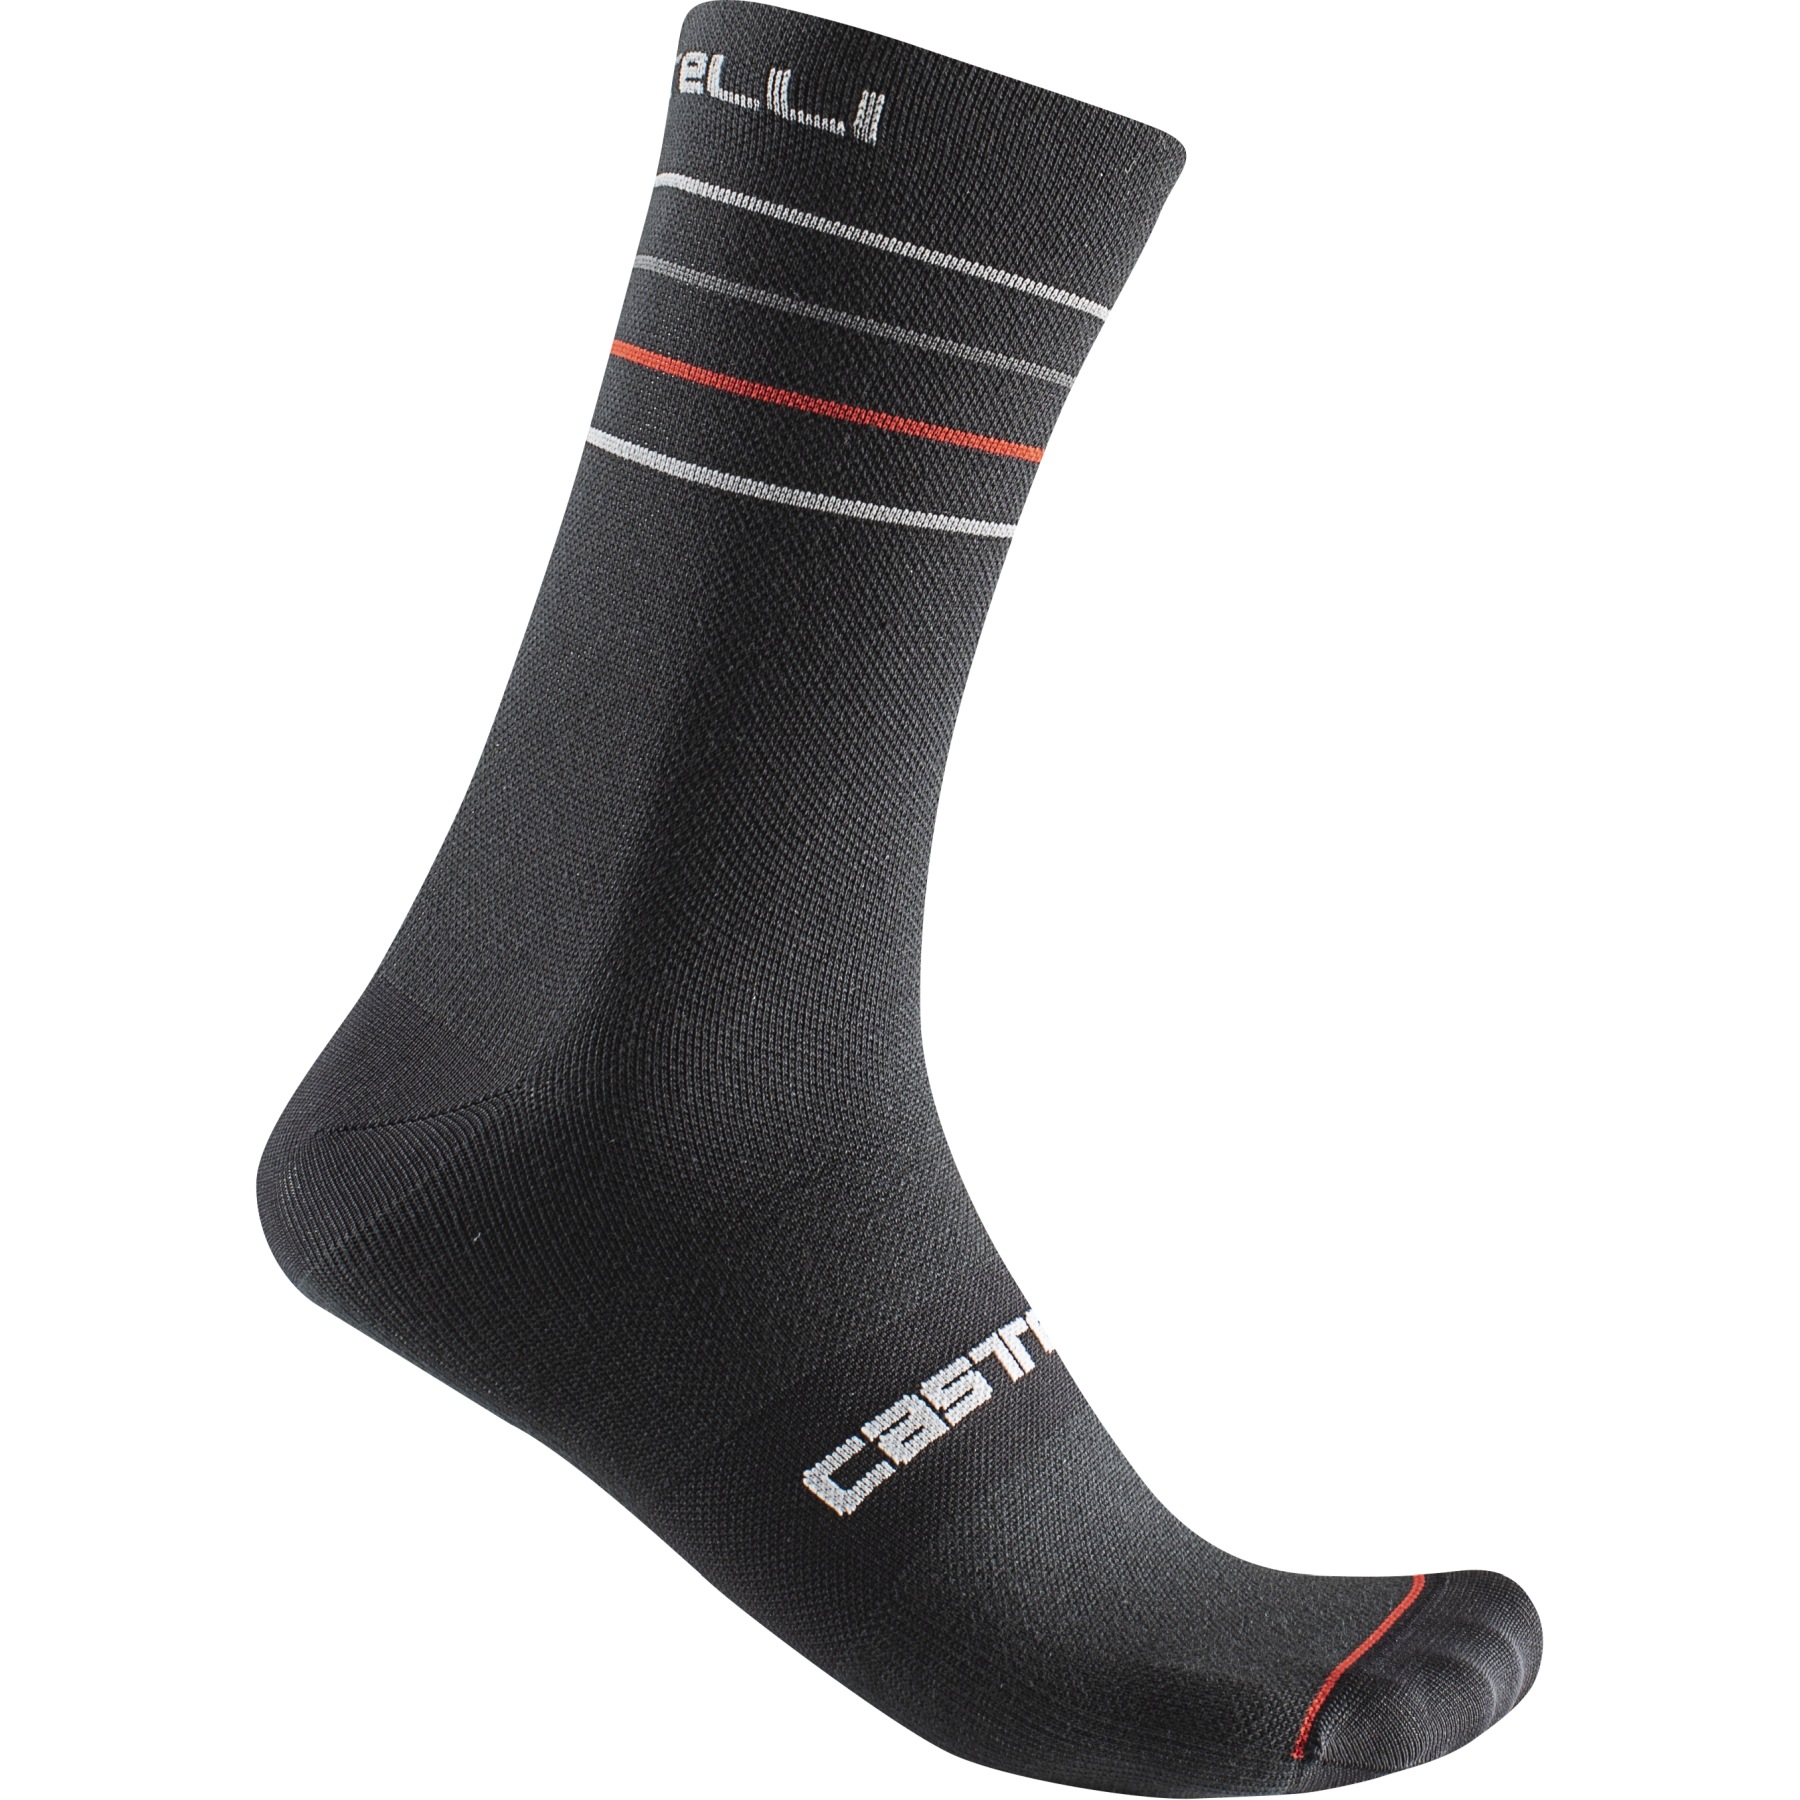 Produktbild von Castelli Endurance 15 Socken - black/silver grey-red 010